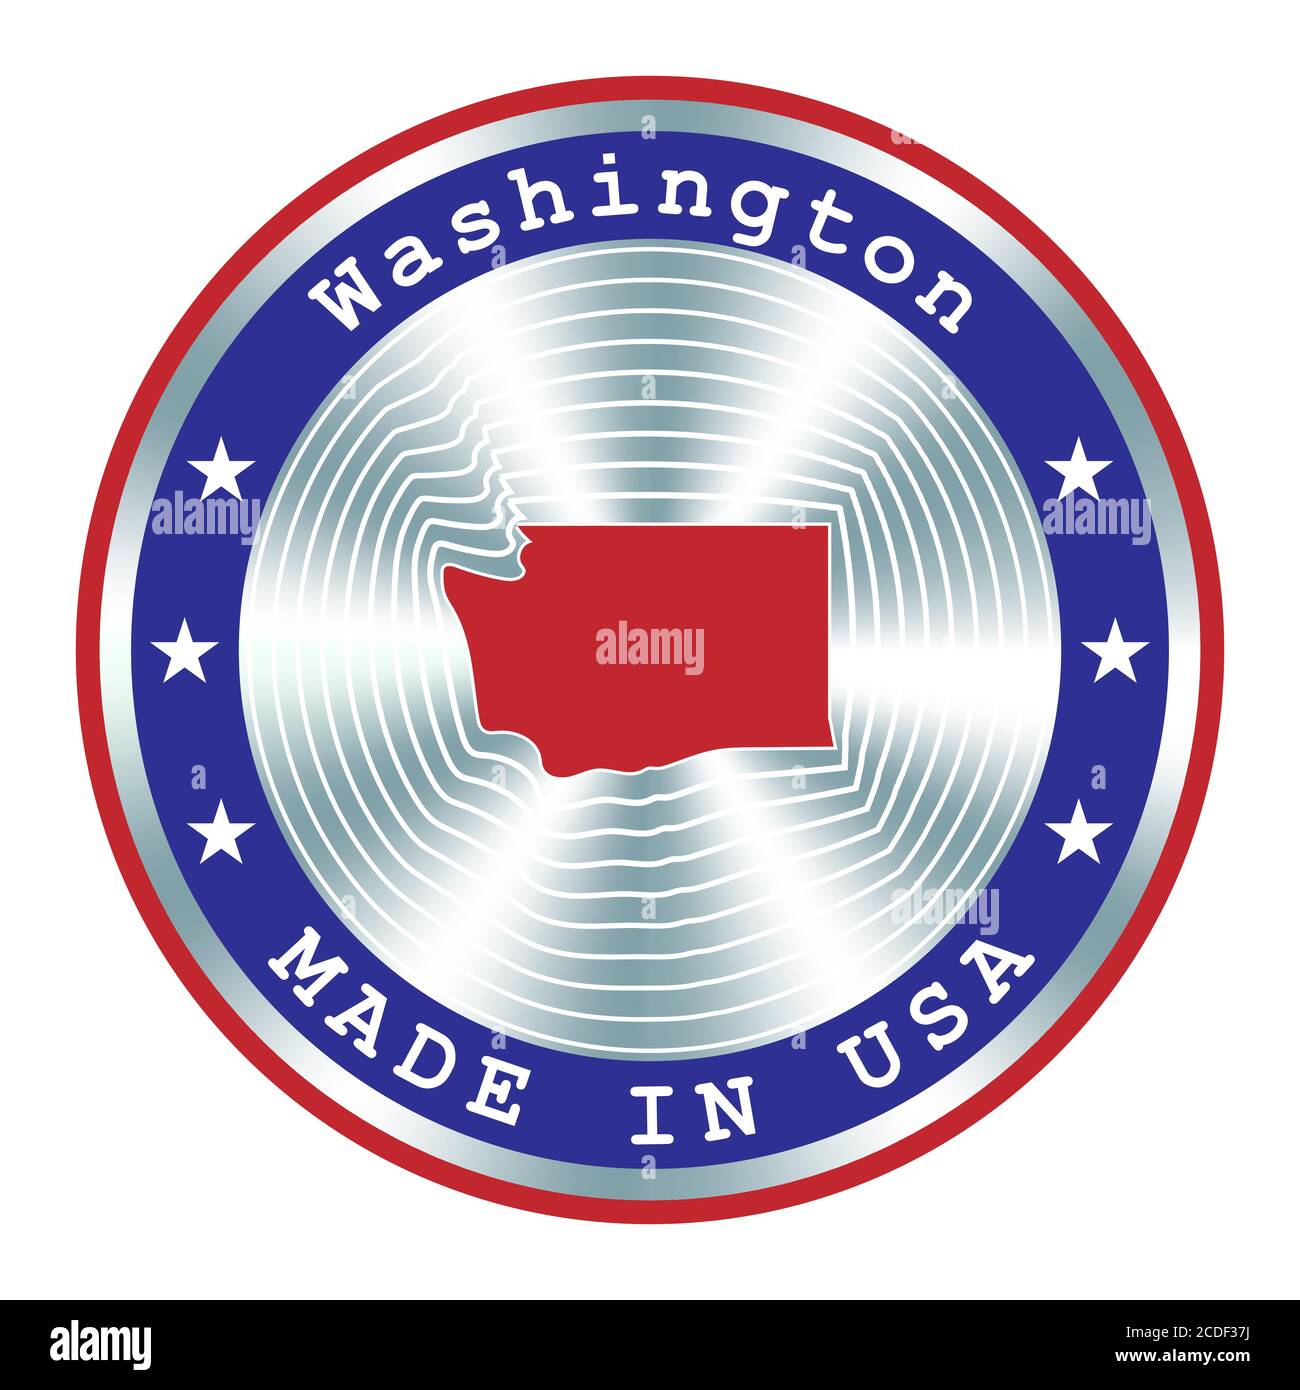 Hergestellt in Washington lokale Produktion Schild, Aufkleber, Siegel, Stempel. Rundes Hologramm-Schild für Etikettendesign und nationales USA-Marketing Stock Vektor